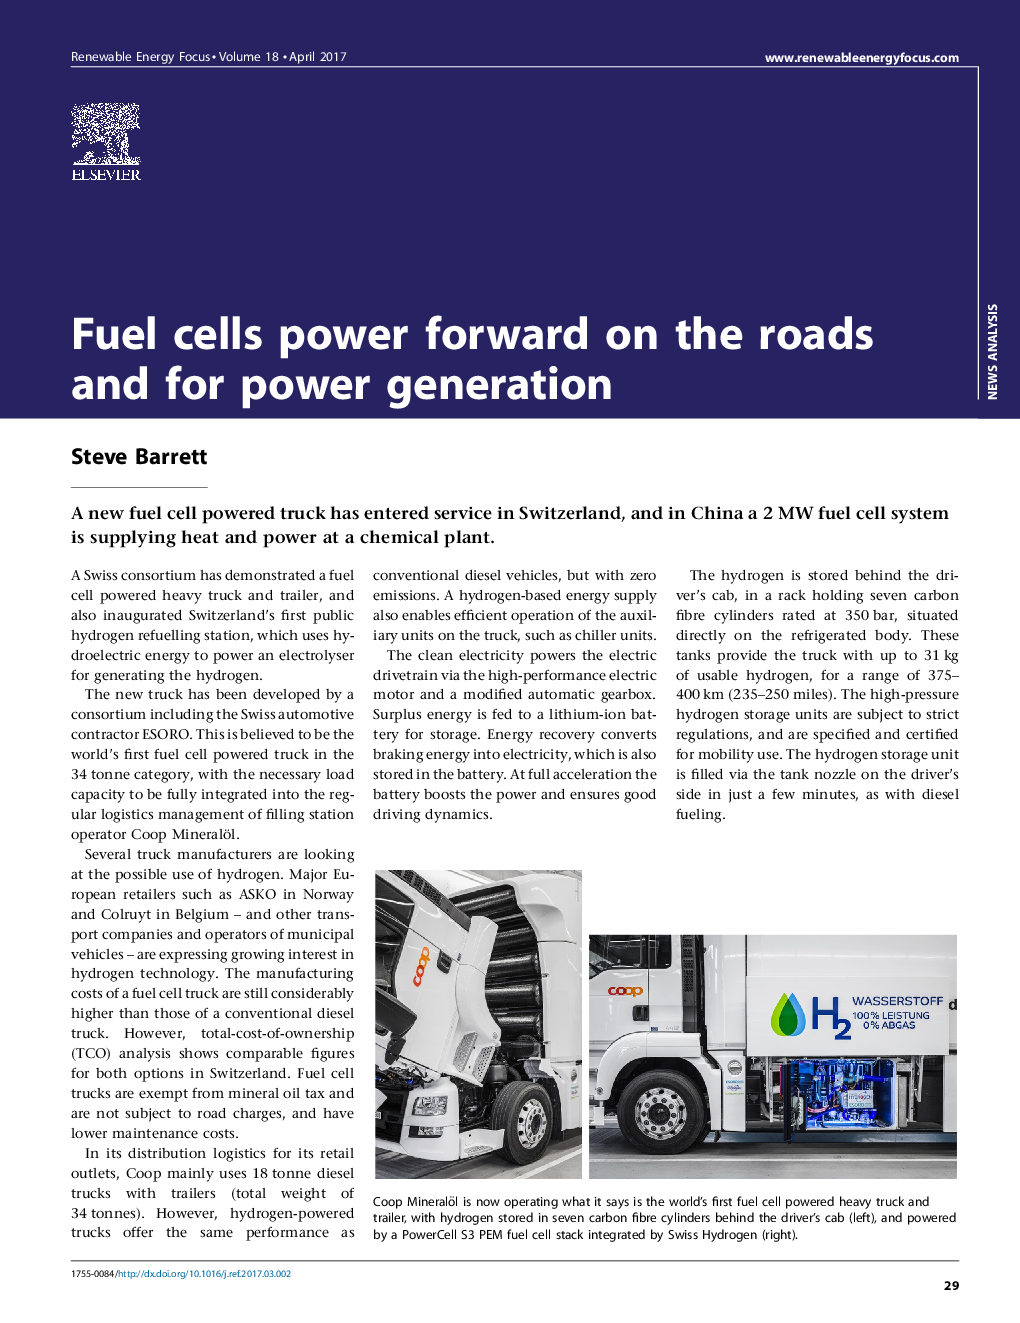 سلول های سوختی در جاده ها و برای تولید برق به جلو حرکت می کنند 